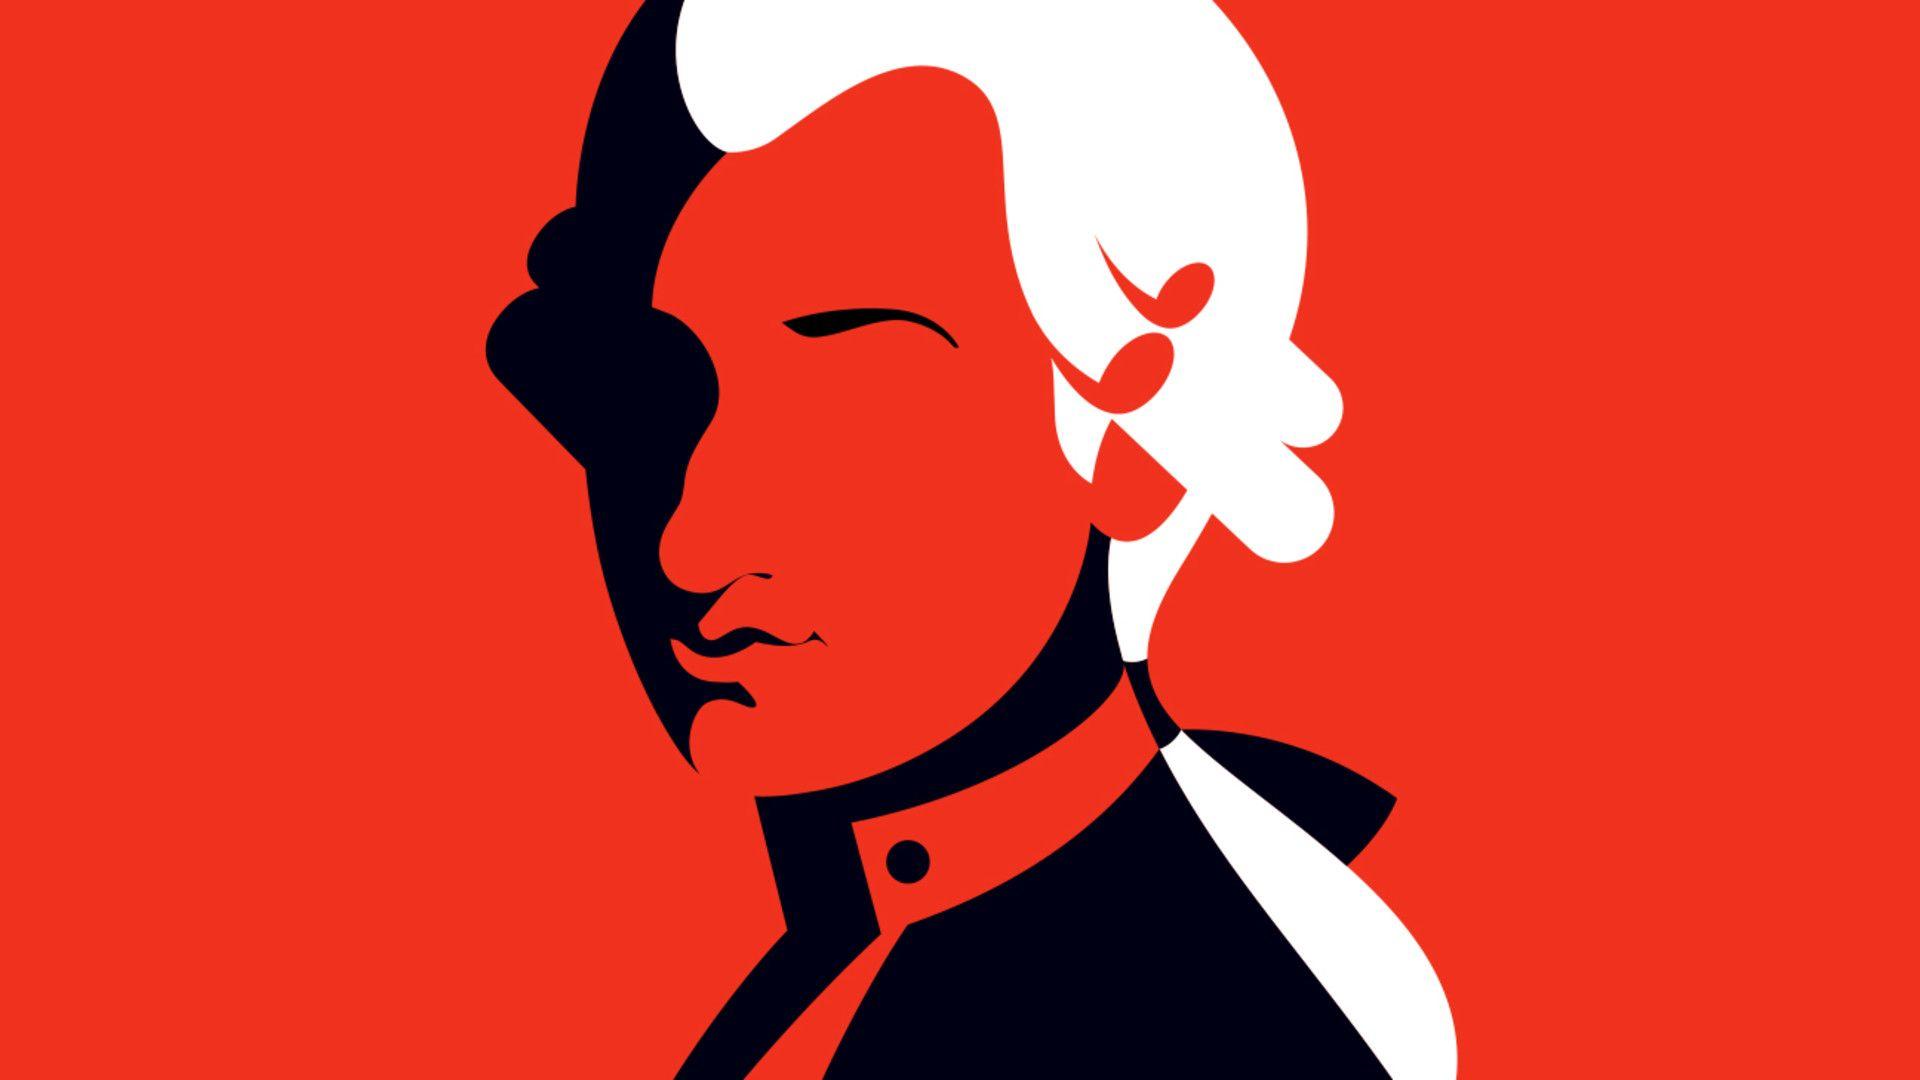 دانلود رایگان عکس گرافیکی موتسارت بزرگترین موسیقی دان اتریشی 